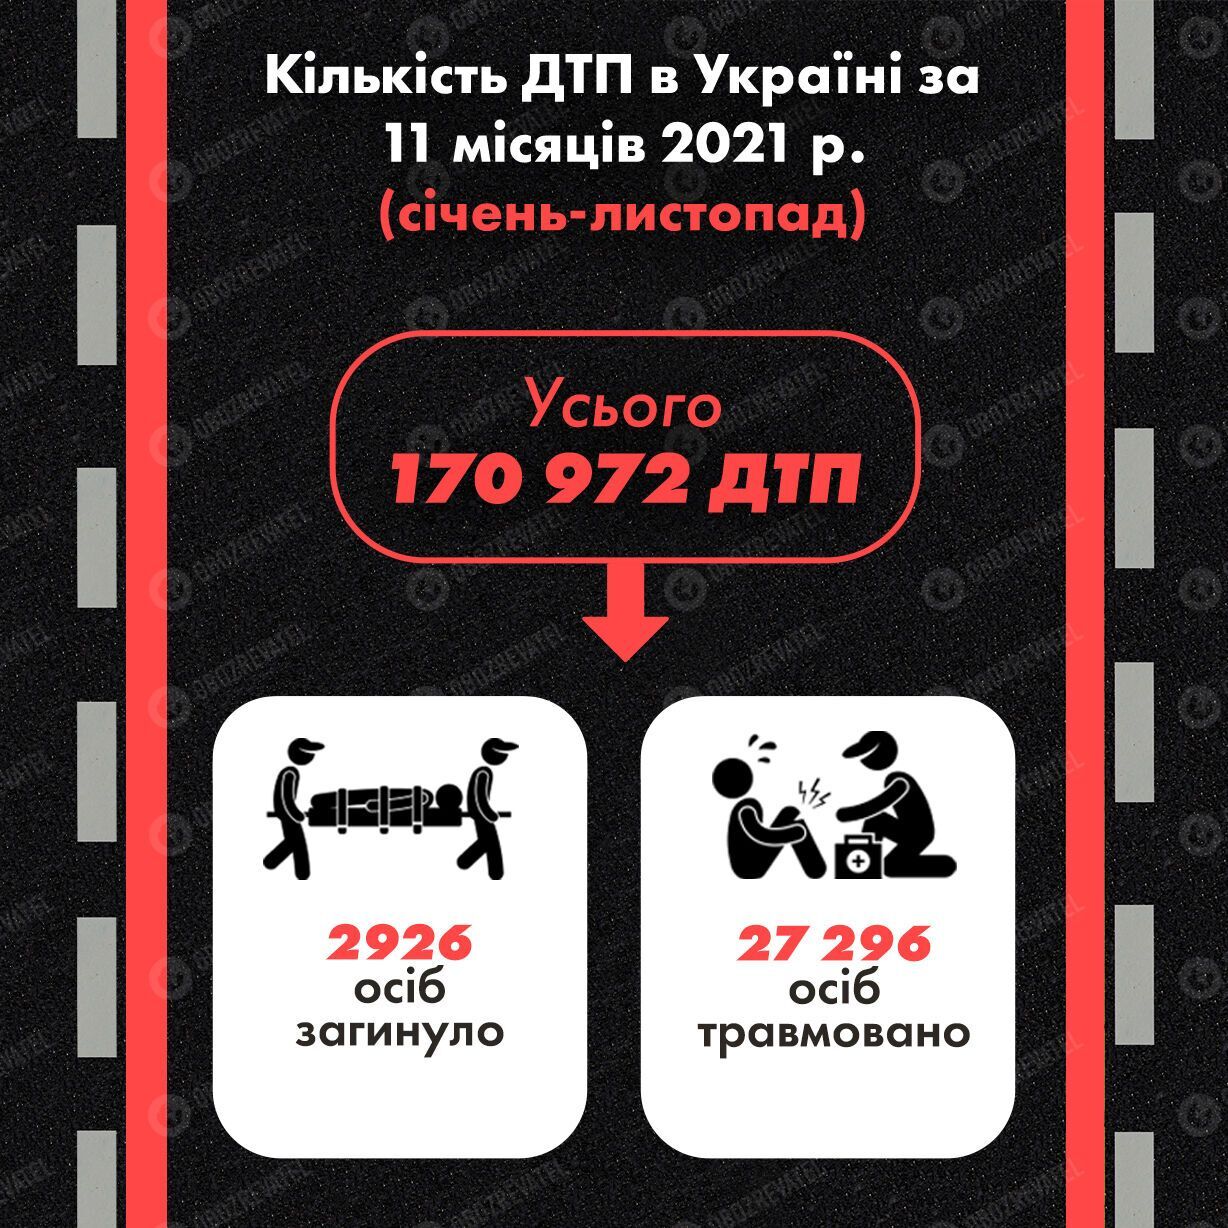 За 11 місяців 2021 року в Україні сталося 170 972 ДТП